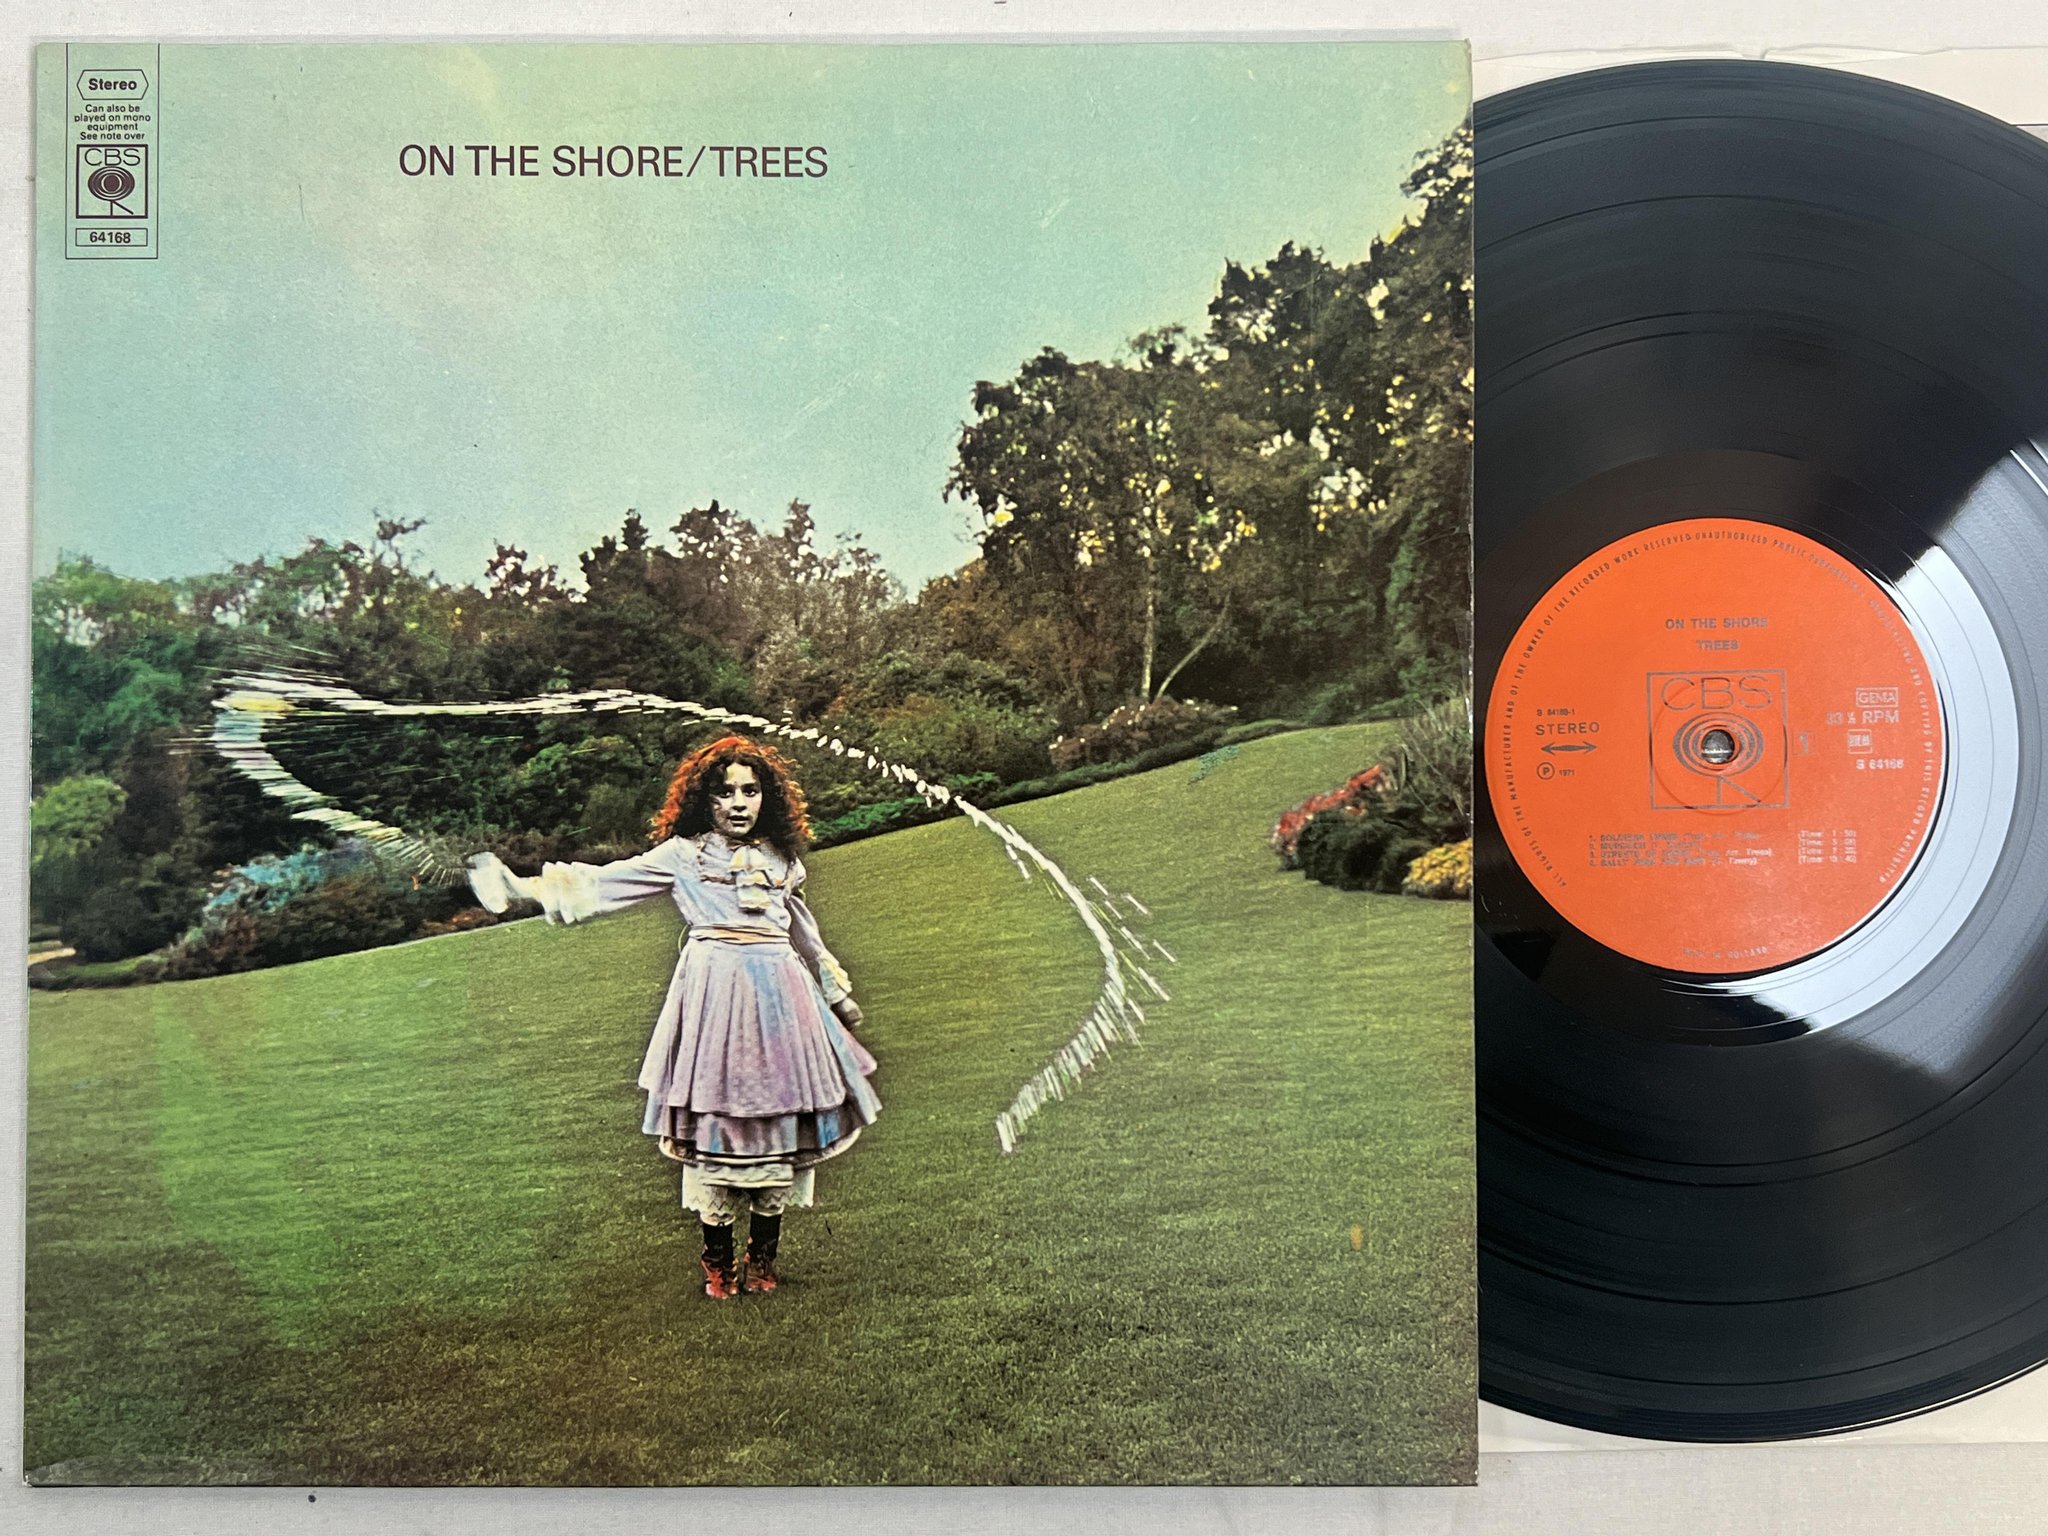 Omslagsbild för skivan TREES on the shore LP -71 Hol CBS S 64168 *** RARE FOLK ROCK ***